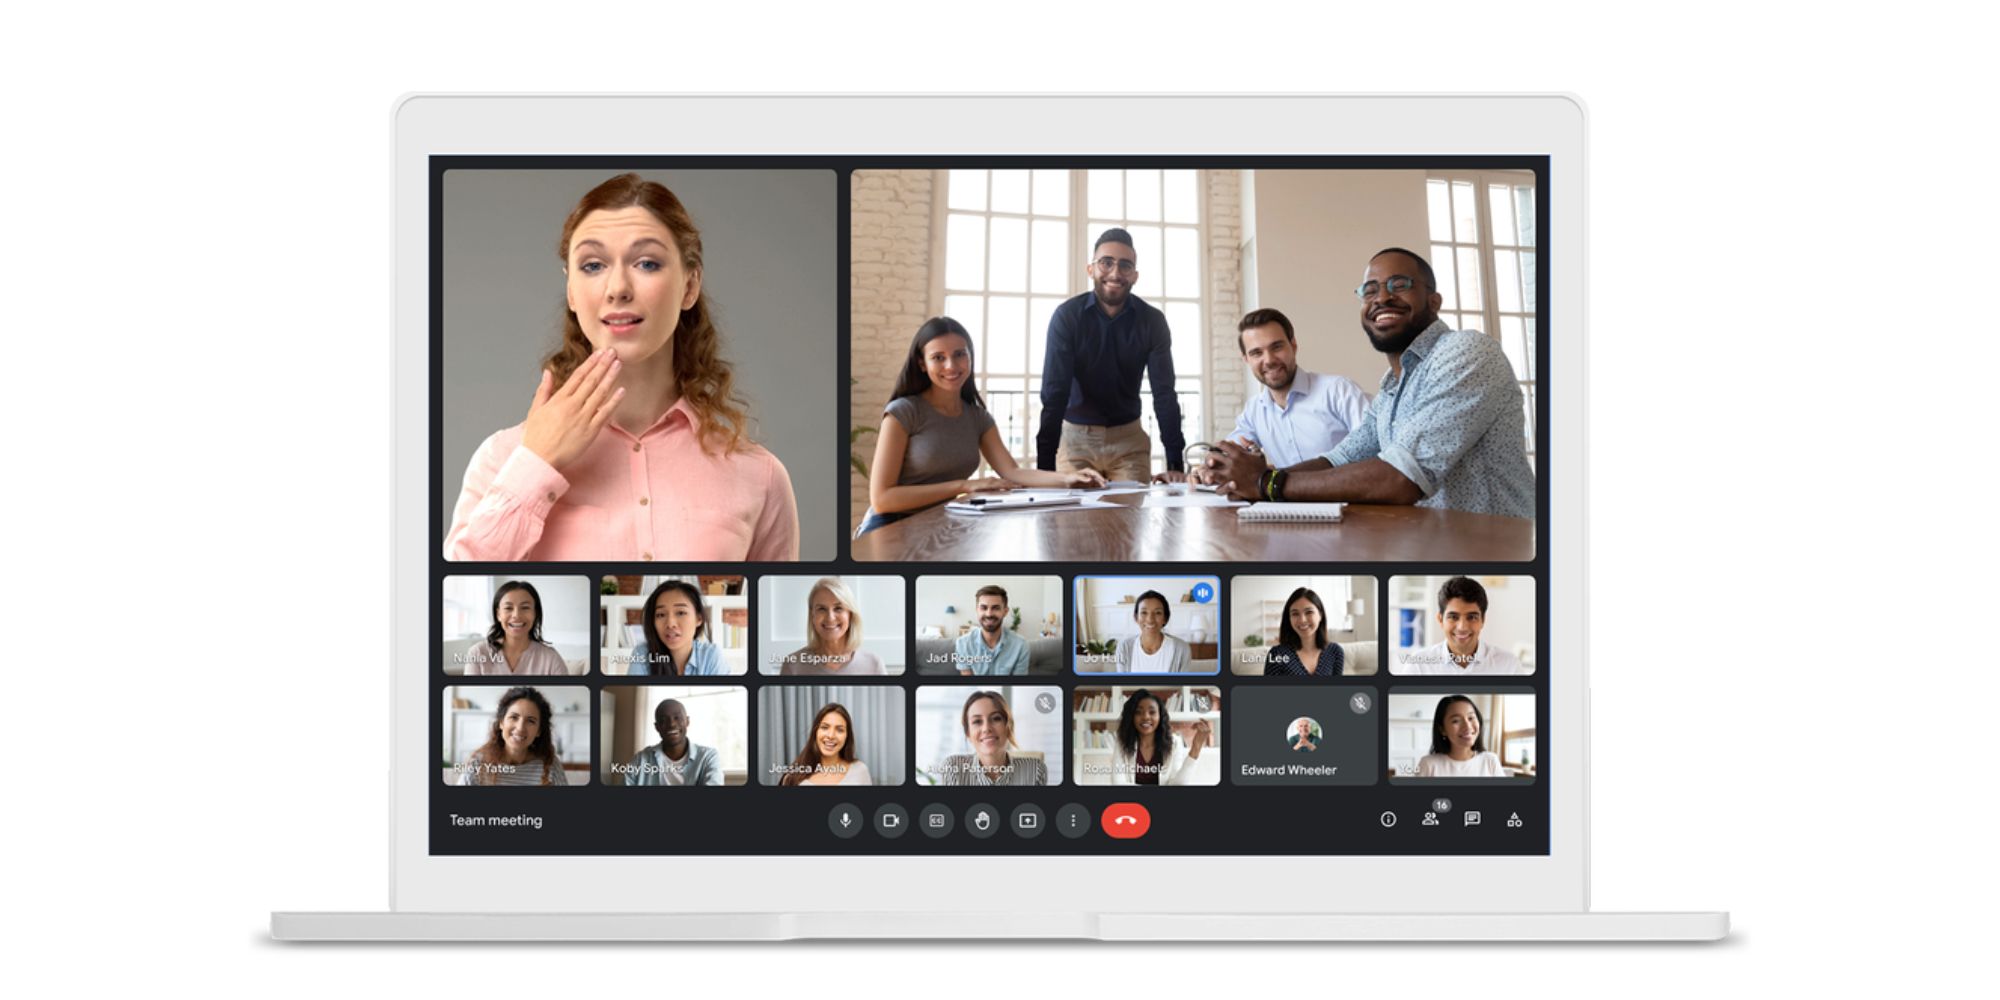 A Google Meet video call on a laptop